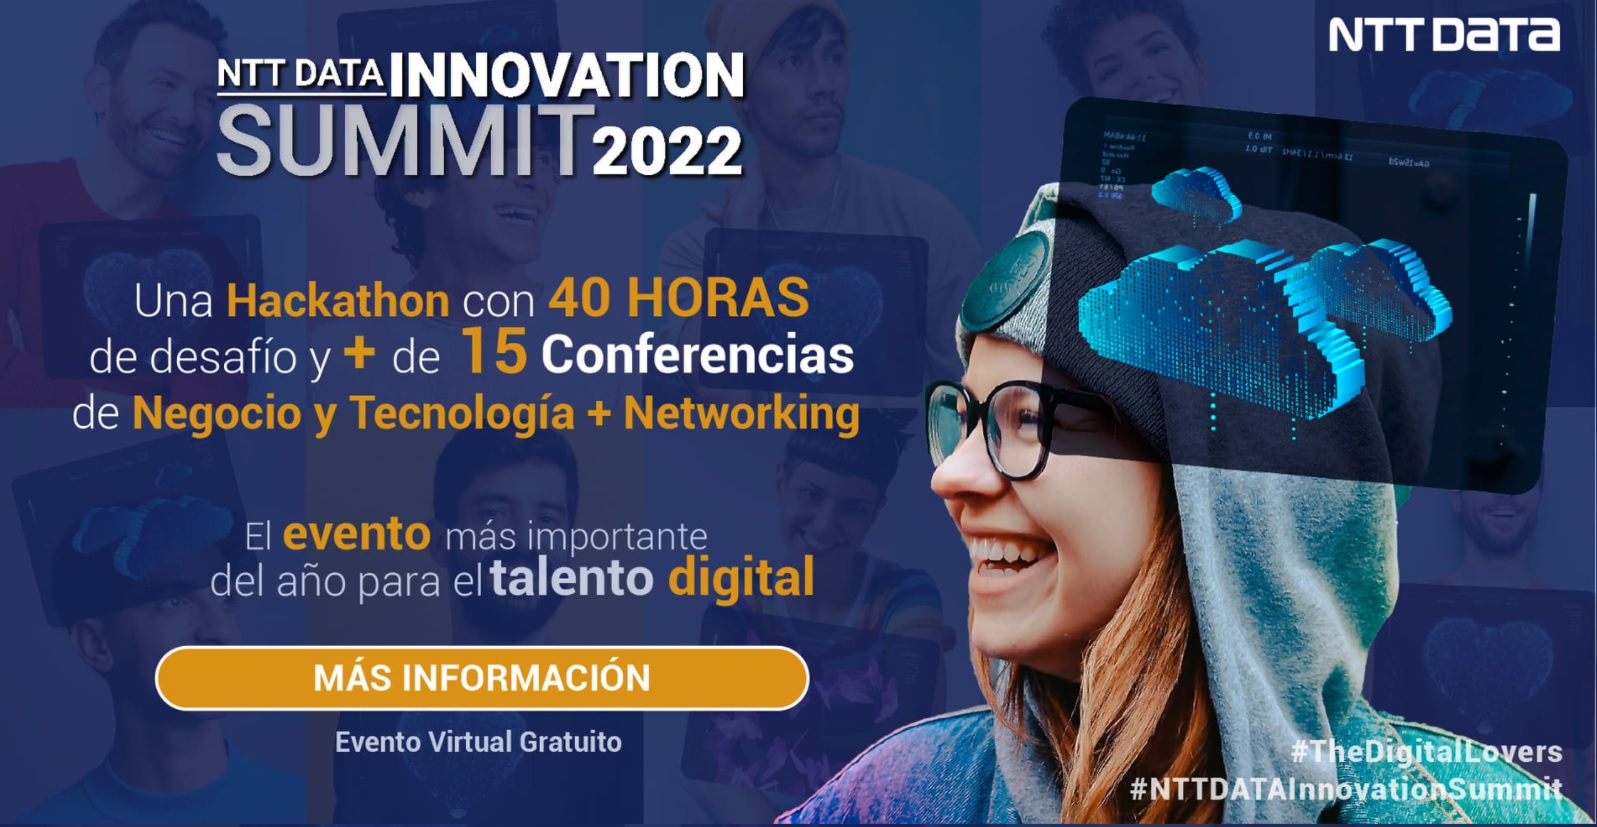 NTT DATA anuncia el Summit Innovation 2022 en Colombia